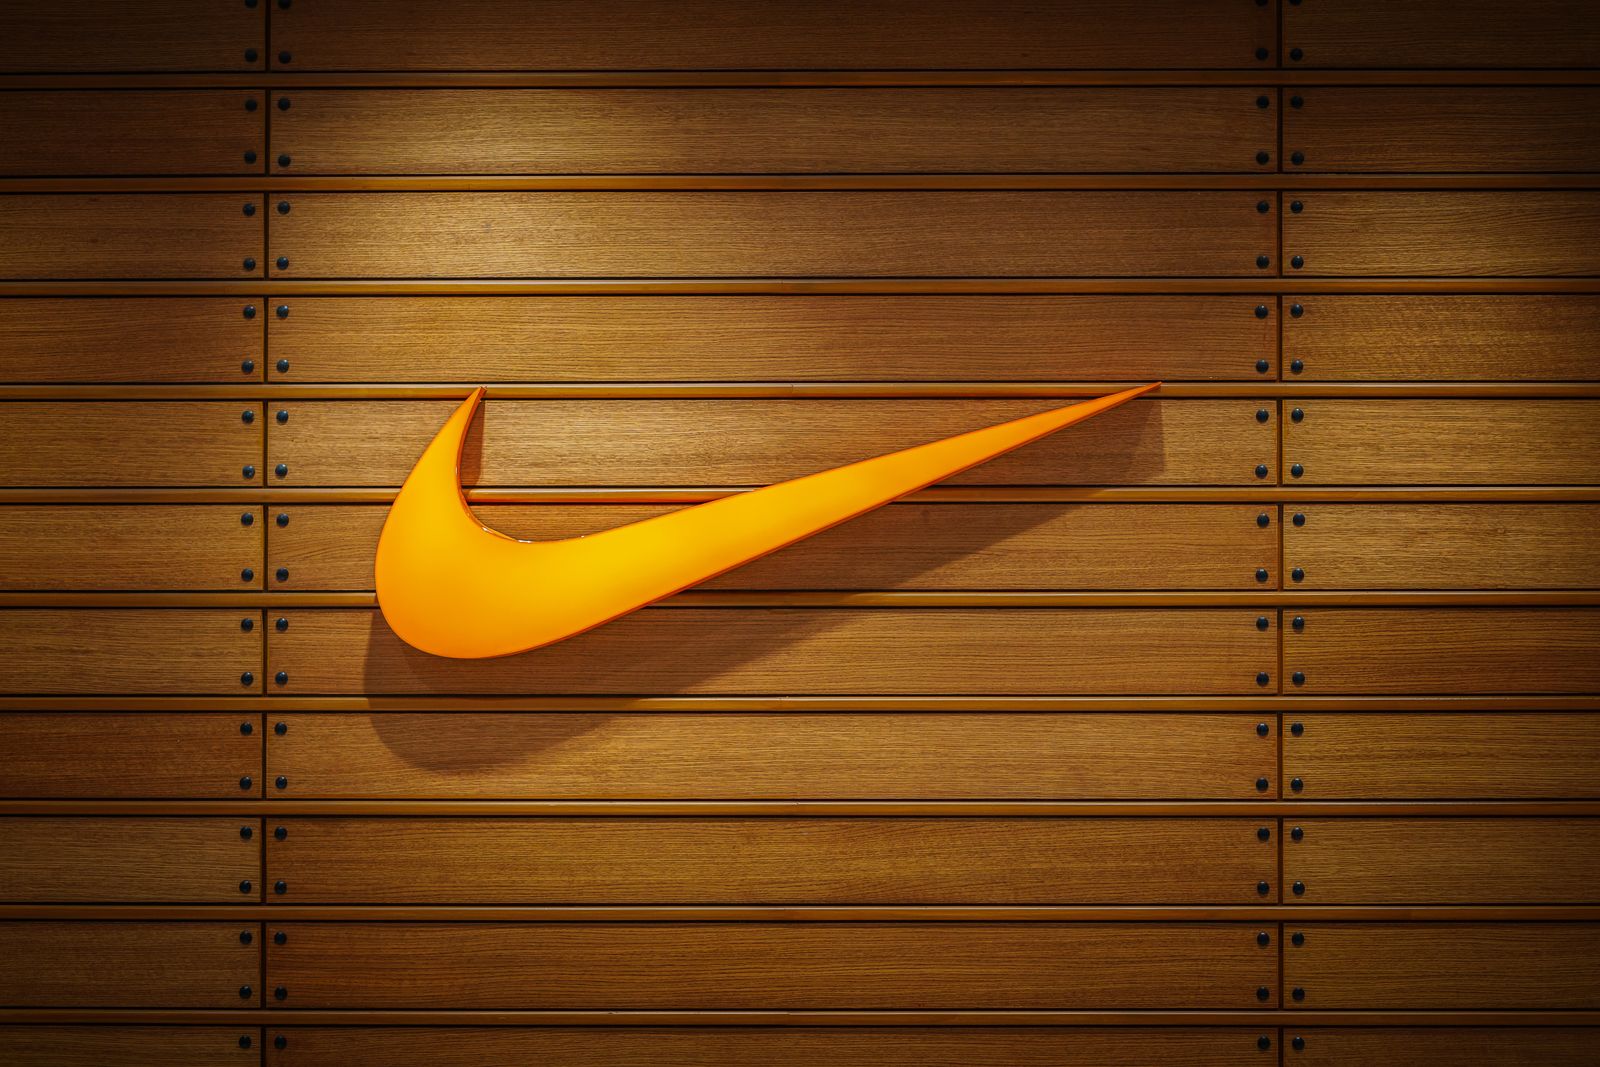 História da Nike - origem e evolução da empresa da calçados pelos anos